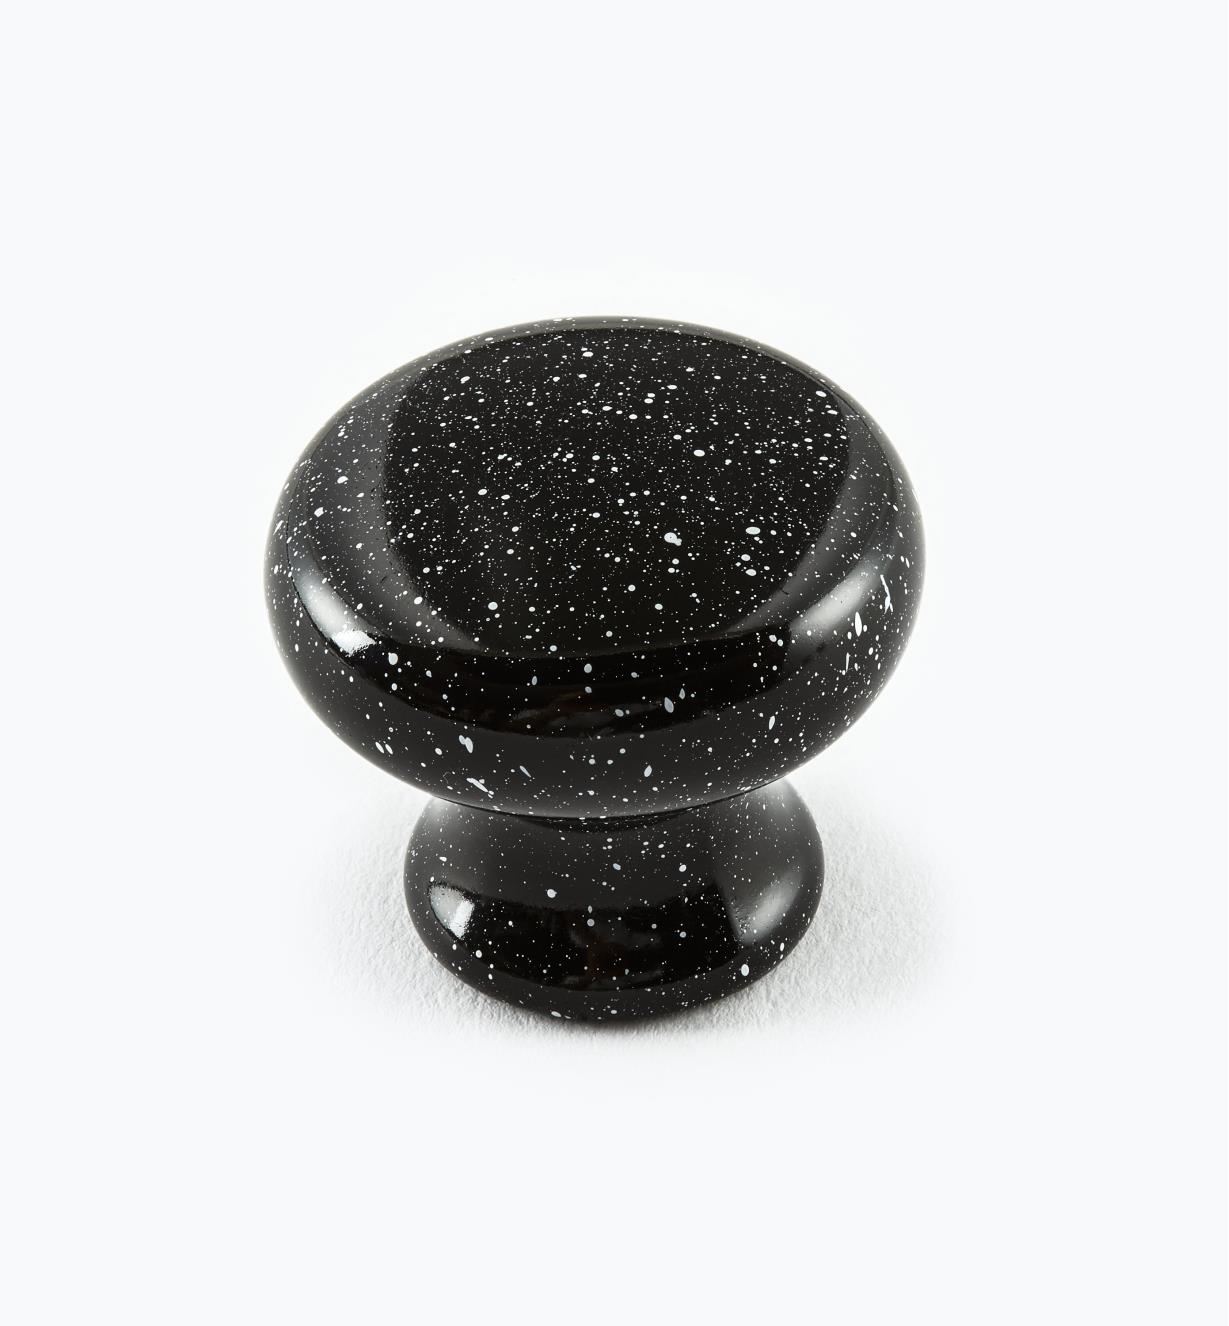 00W3754 - Bouton classique en plastique, grès noir, 1 1/4 po x 1 1/16 po